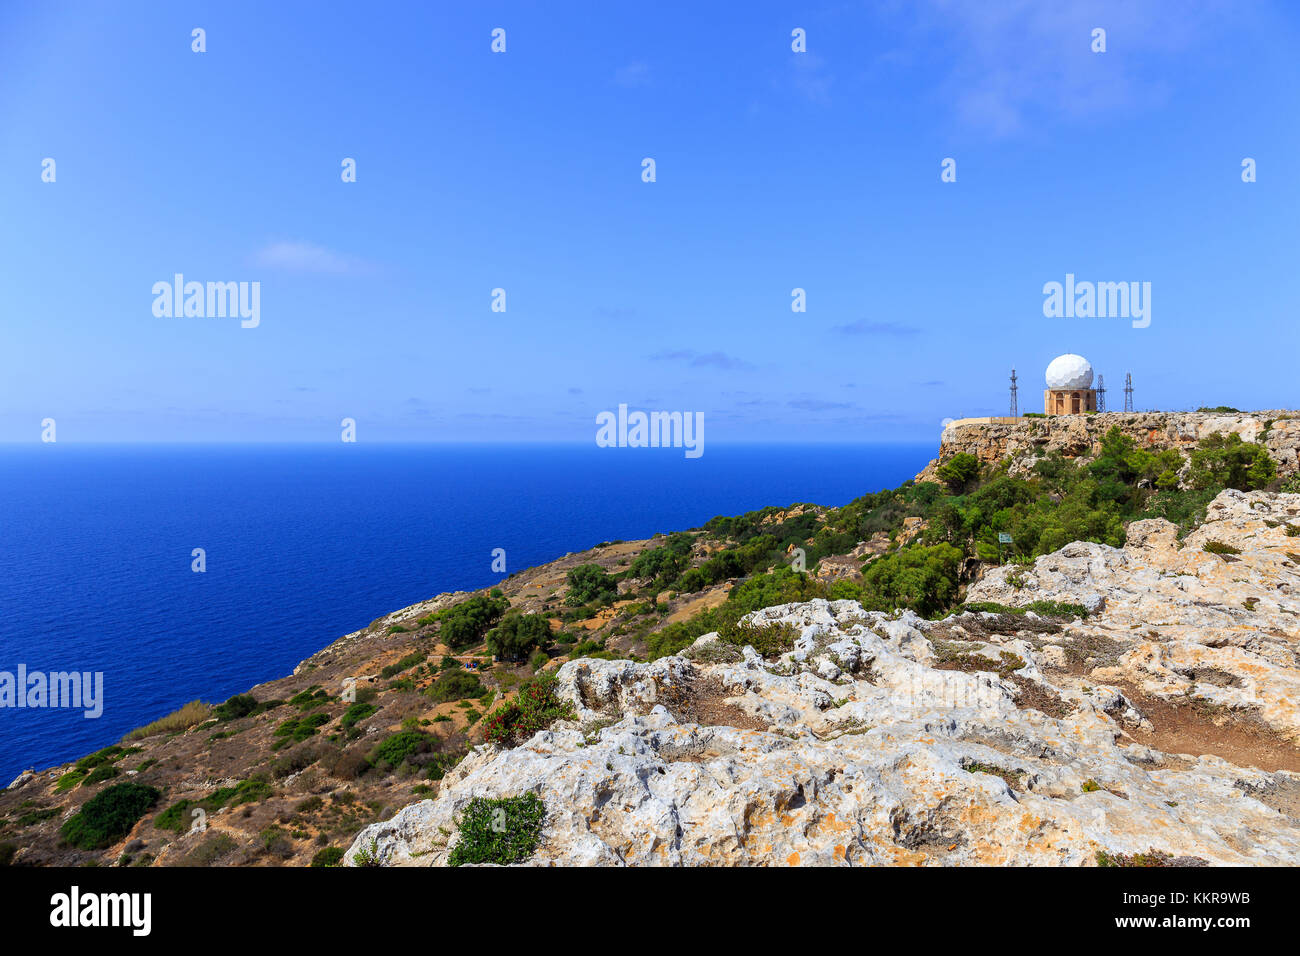 Malta, oficialmente conocida como la República de Malta, es un país insular del sur de Europa que consta de un archipiélago en el Mar Mediterráneo. Foto de stock